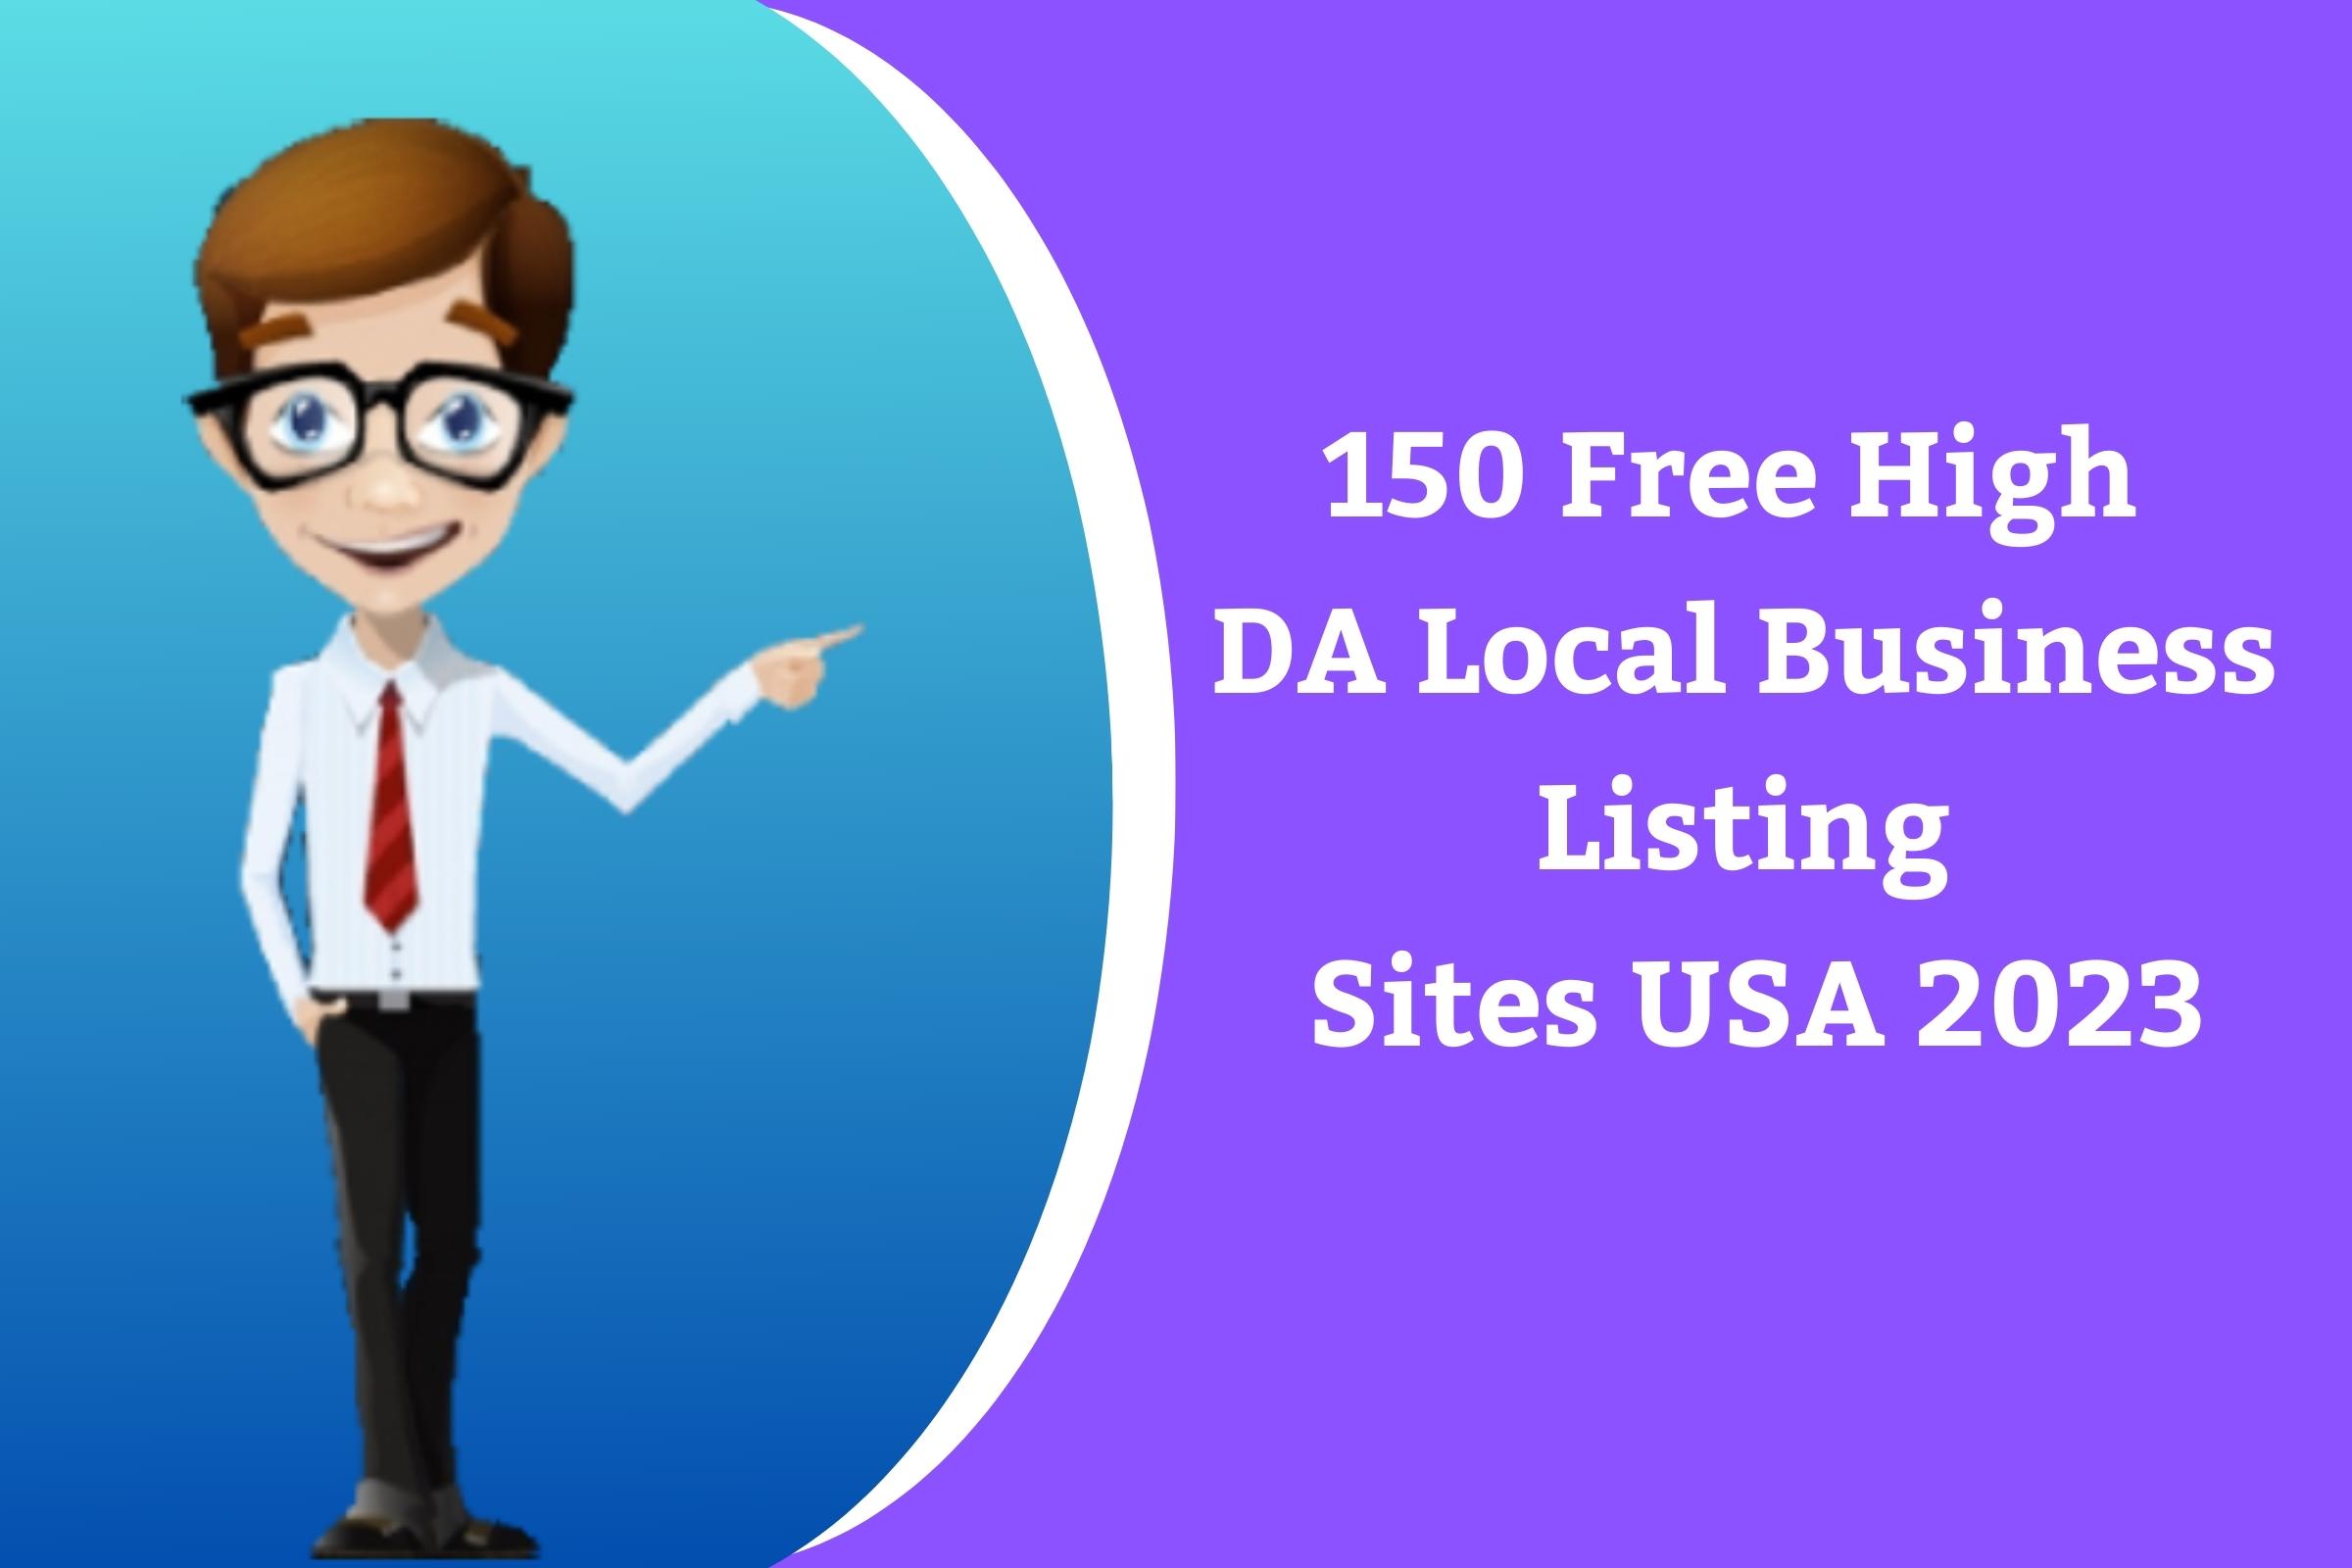 Free High DA Local Business Listing Sites USA 2023